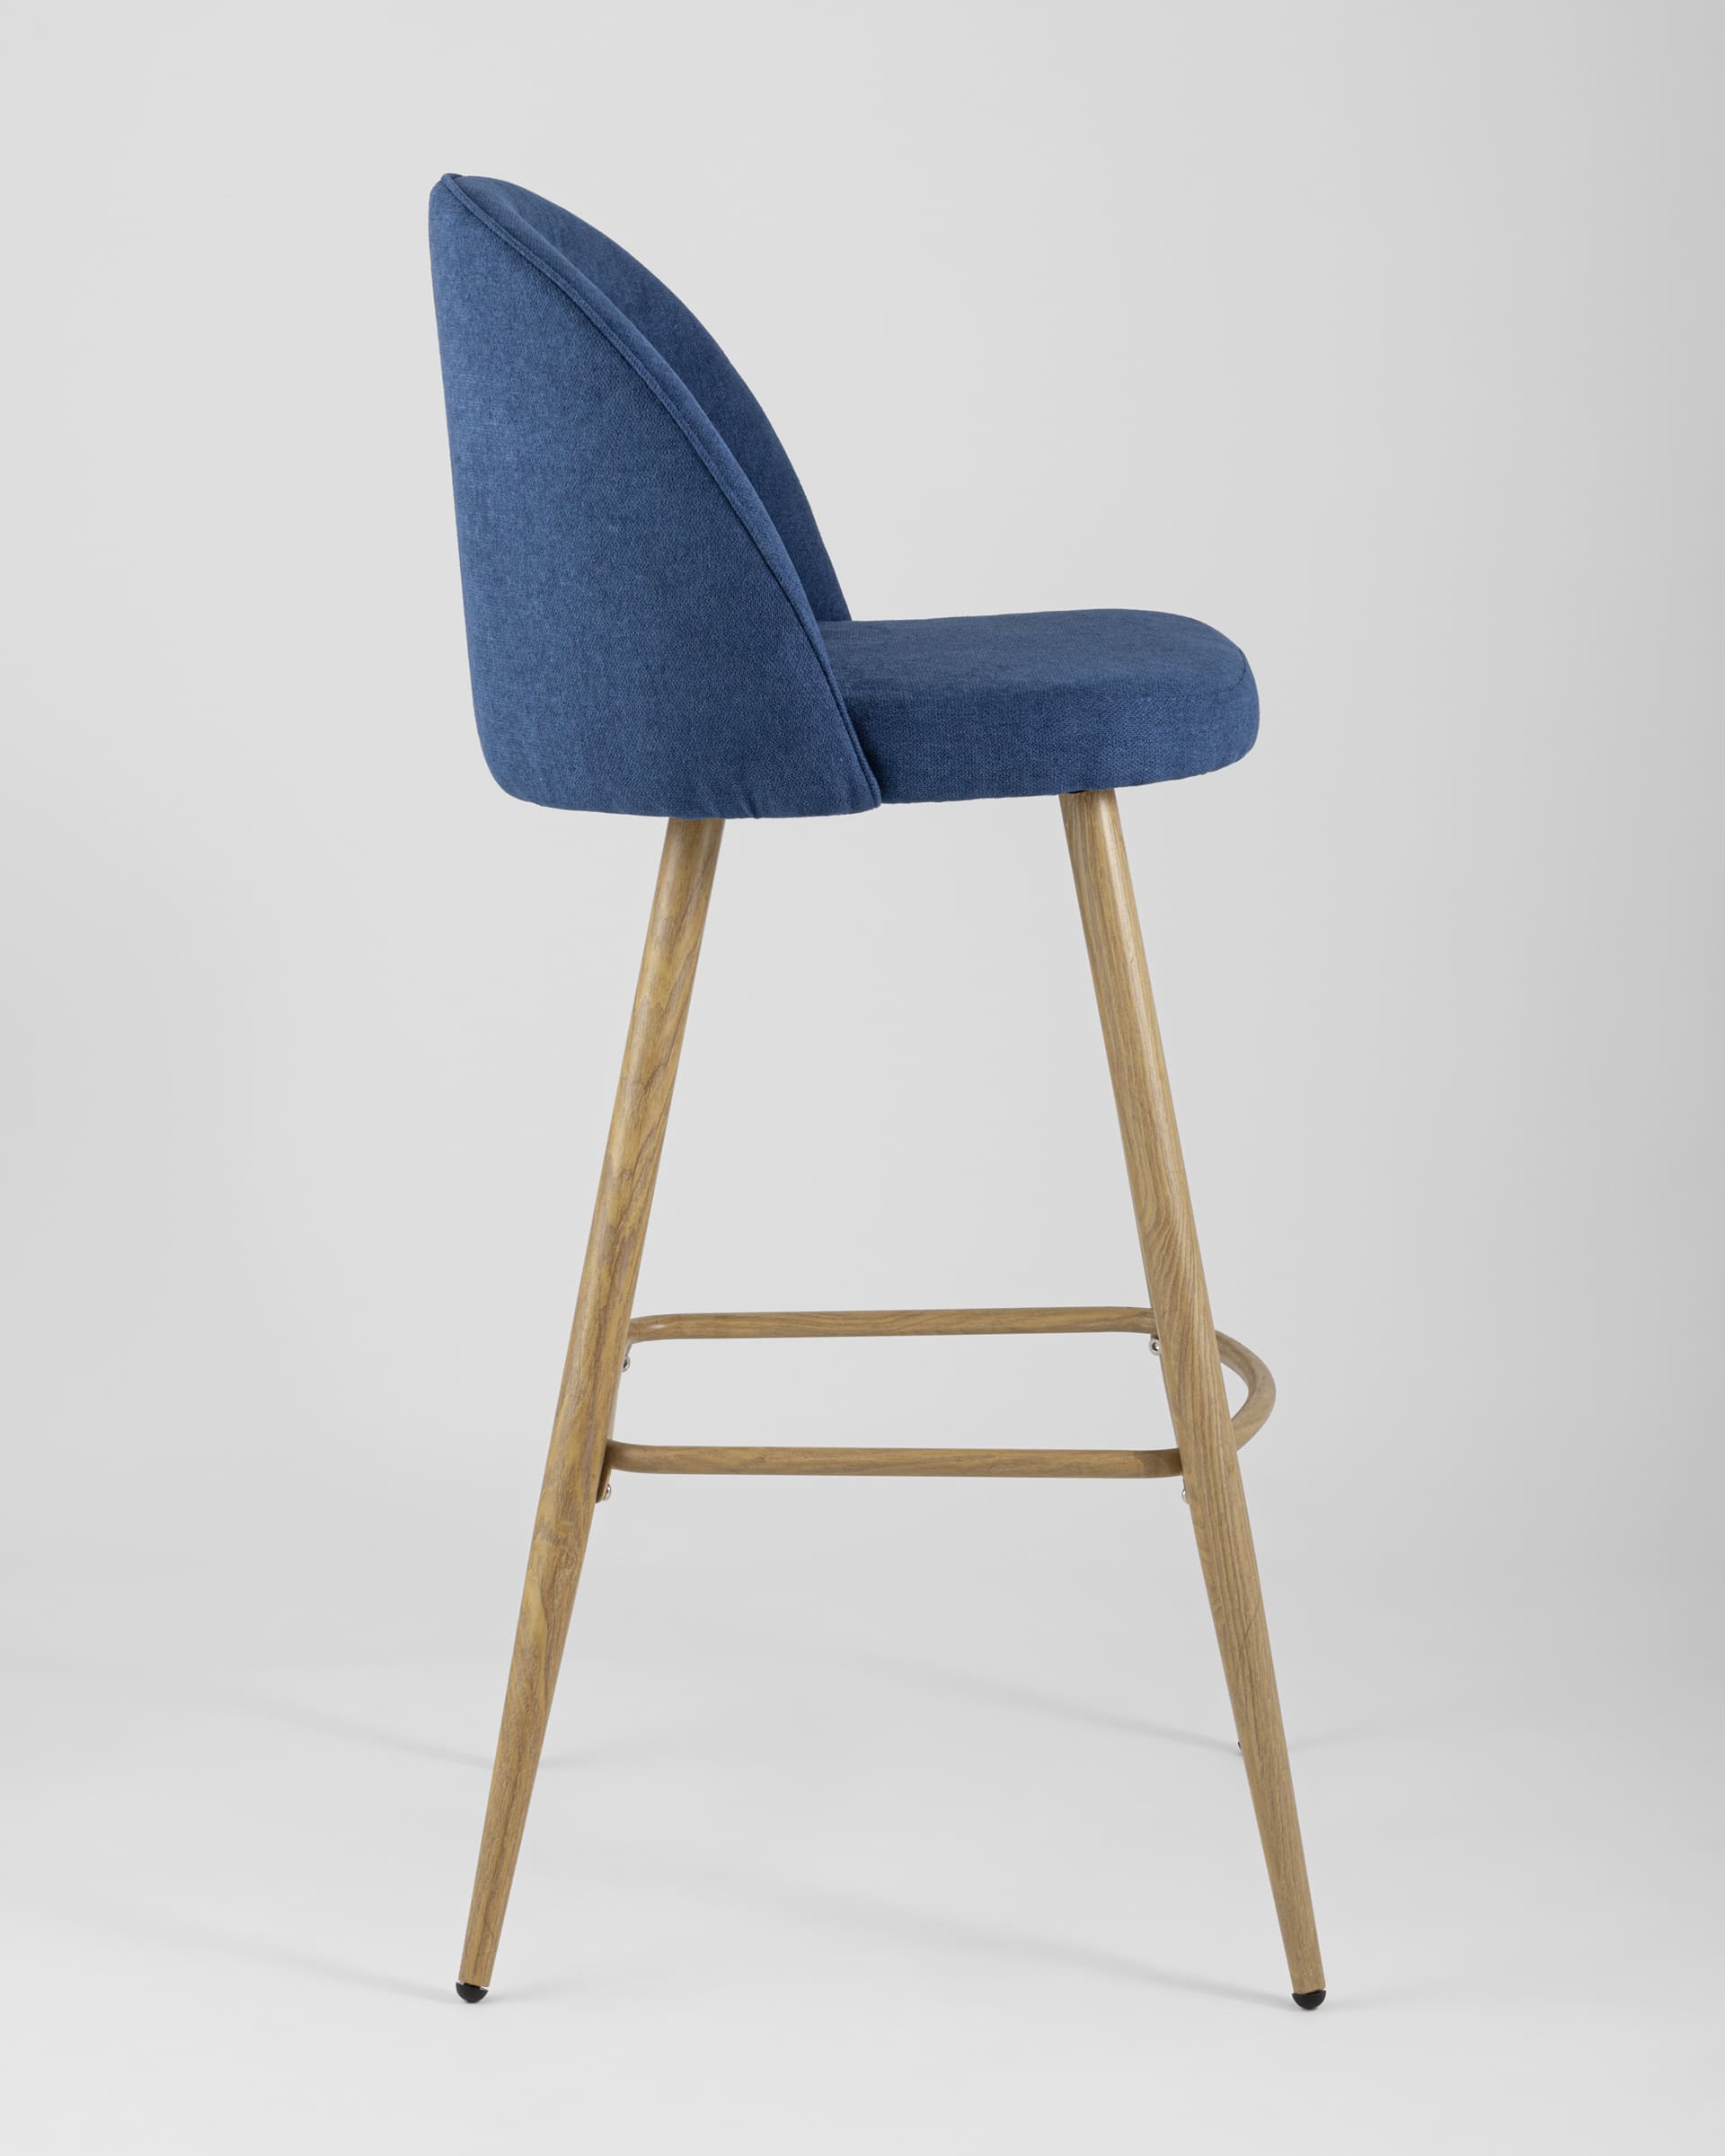 Барный стул Лион обивка тканевая шенилл синего цвета, ножки под цвет светлого дерева из металла